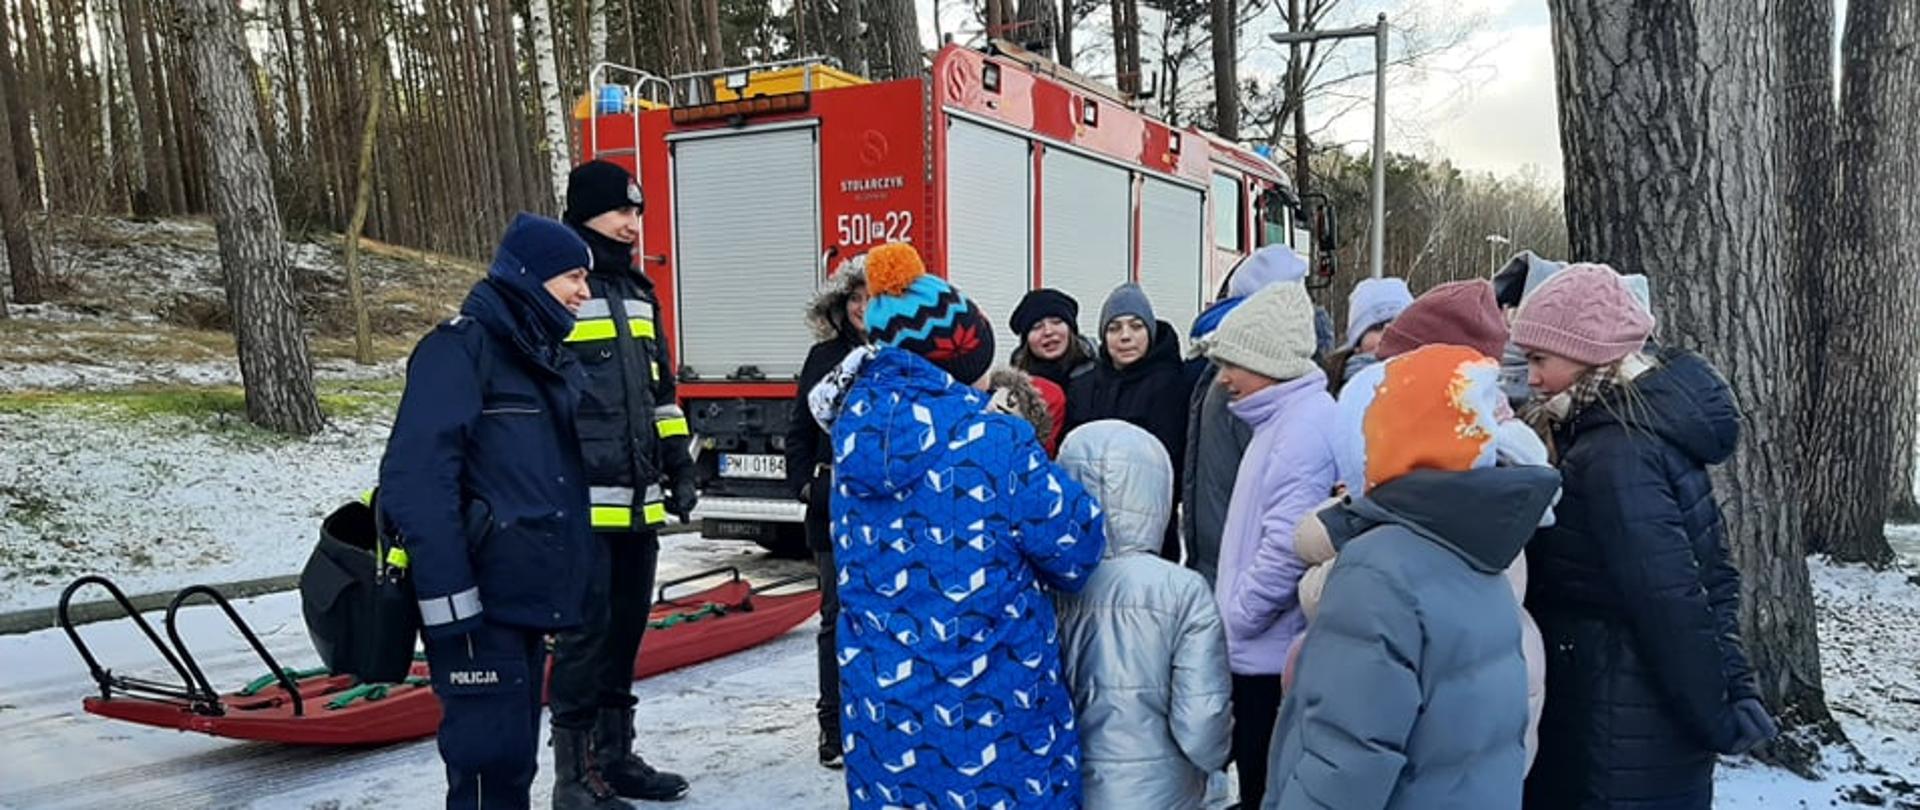 Zdjęcie przedstawia grupę dzieci i młodzieży, przy nich strażak i policjantka, którzy rozmawiają ze sobą. Obok samochód pożarniczy i sanie lodowe.